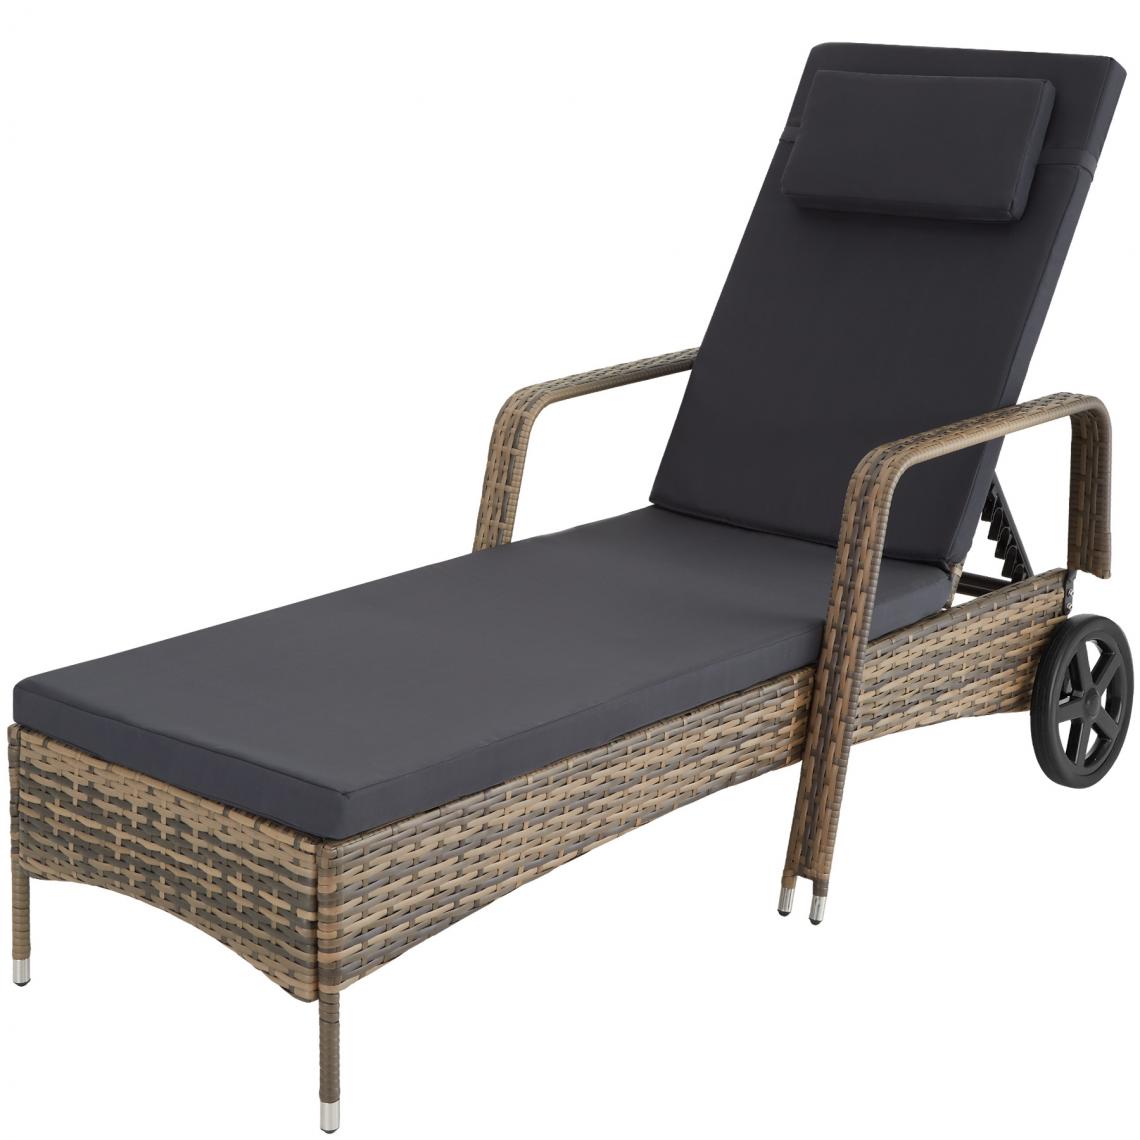 Tectake - Bain de soleil aluminium Cassis 6 positions avec roulettes - marron naturel - Transats, chaises longues